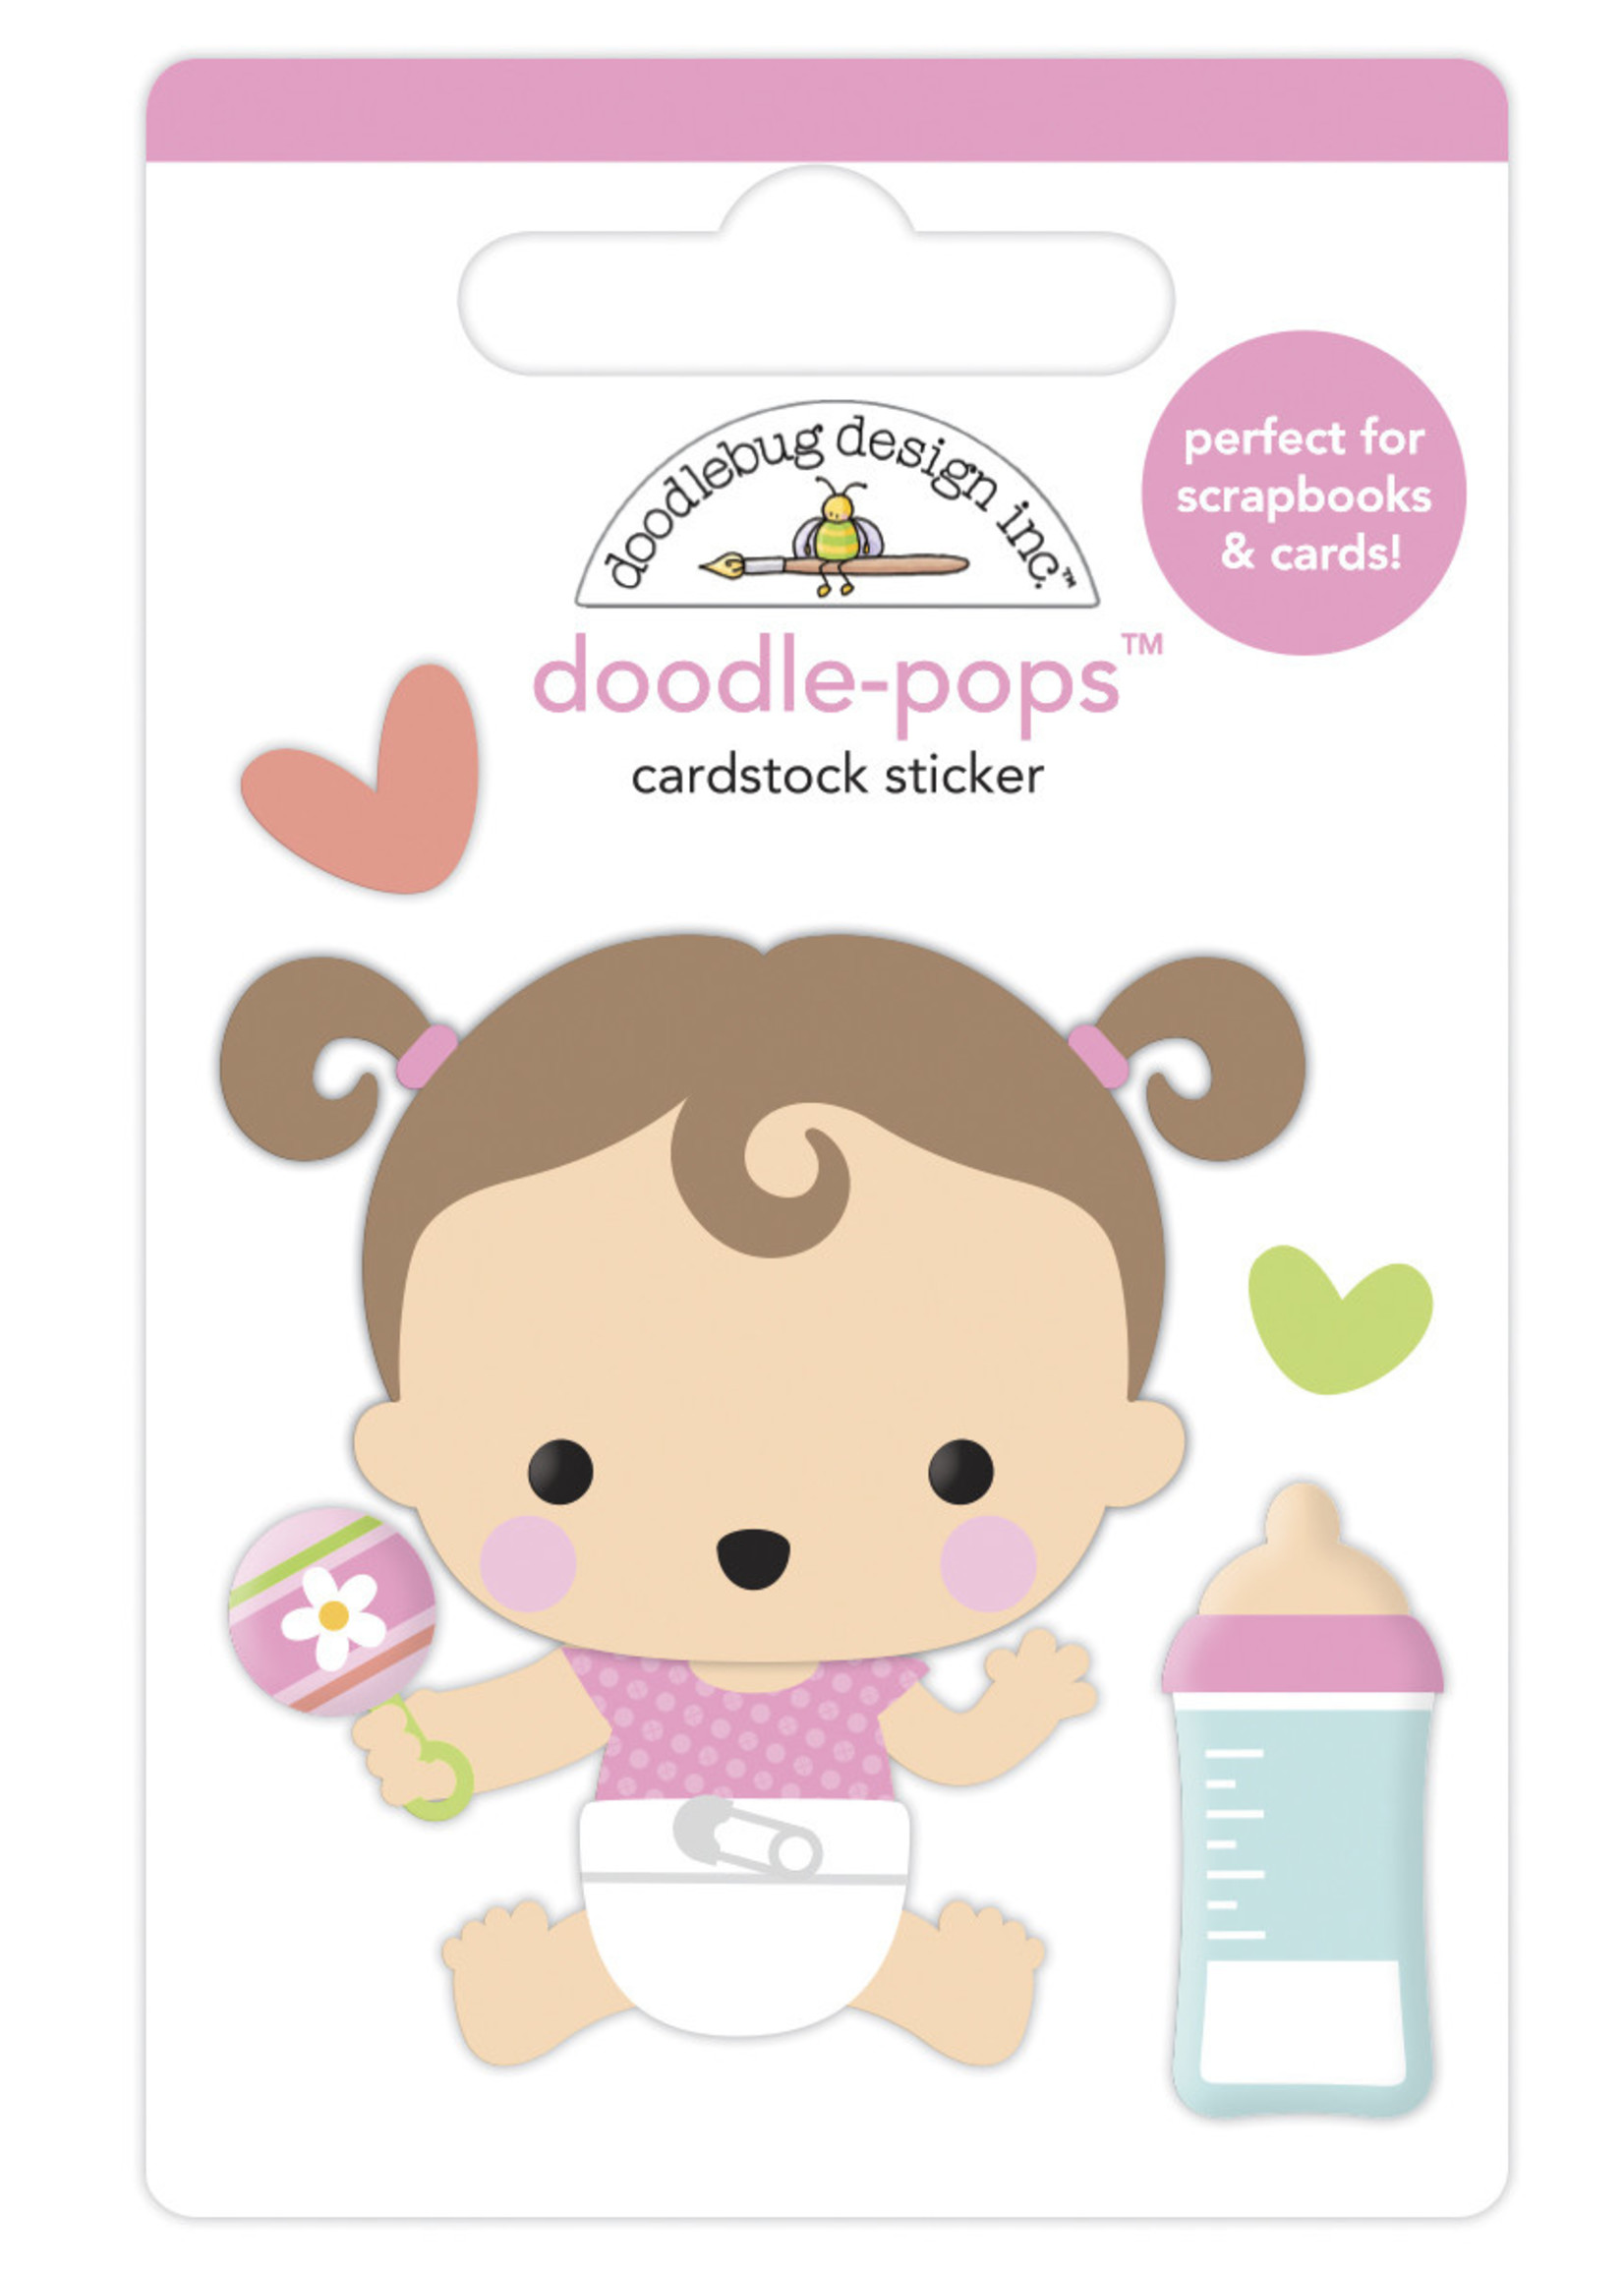 DOODLEBUG bundle of joy: sweet girl doodle-pops